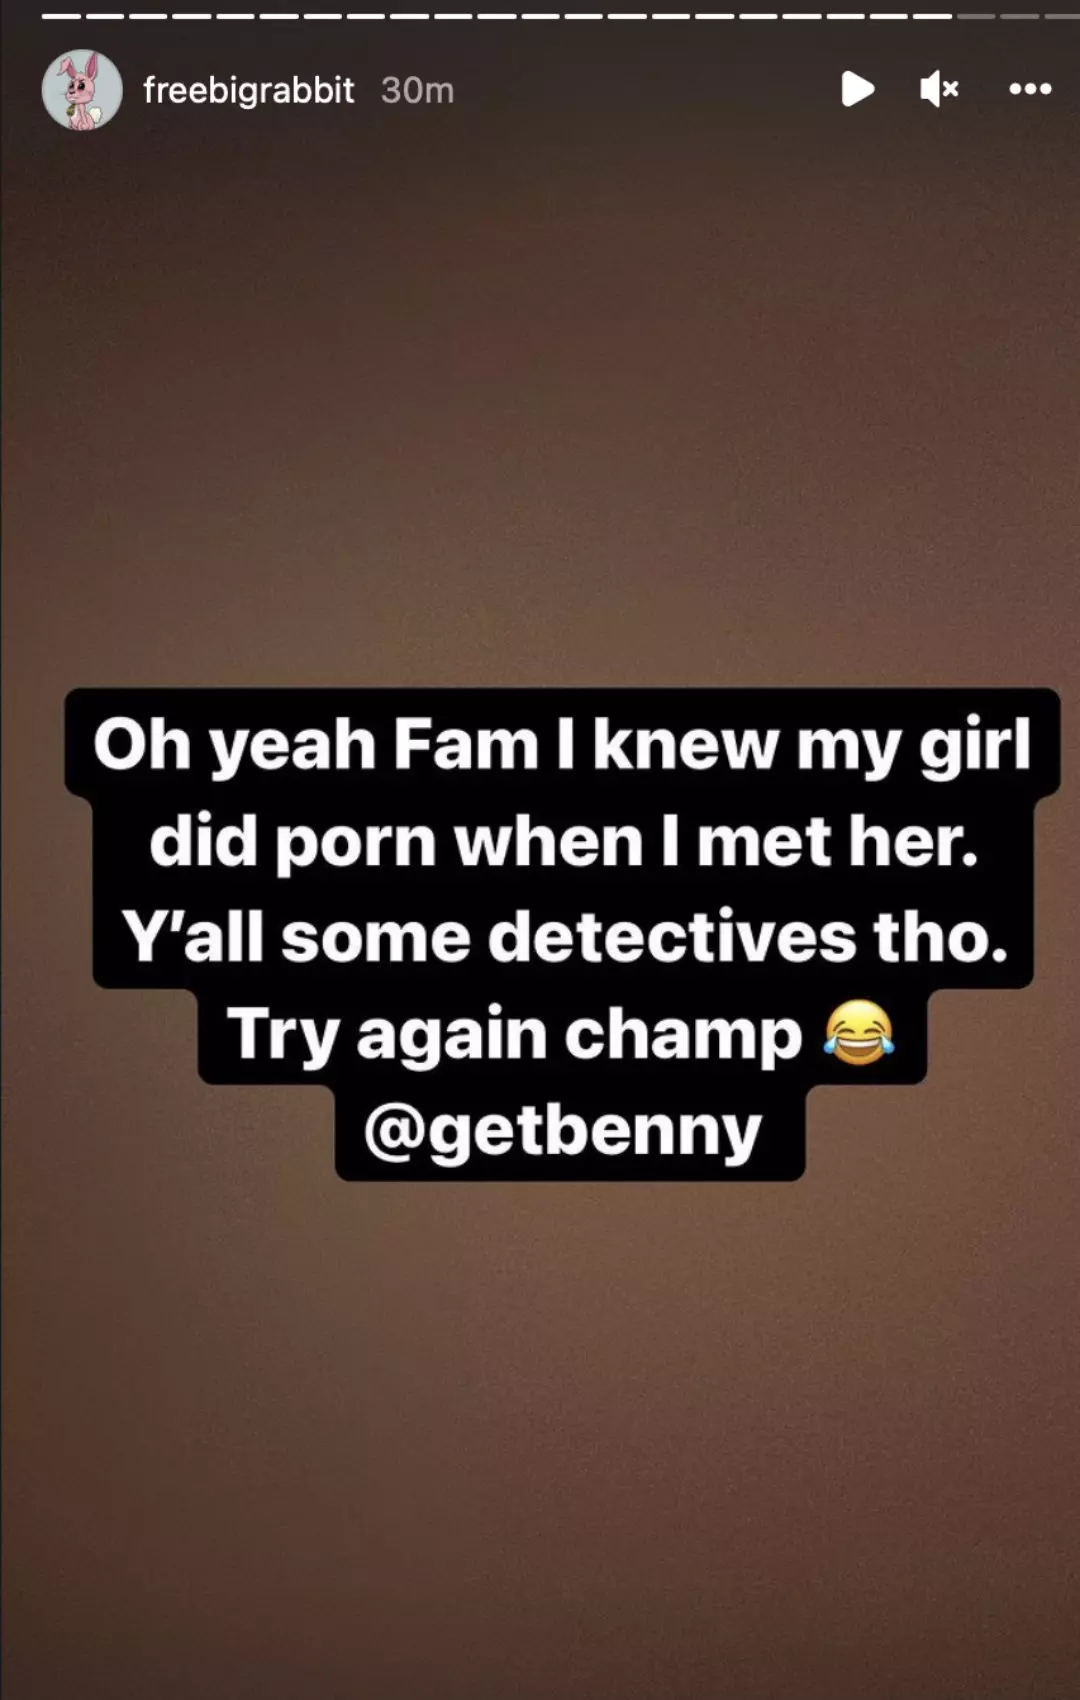 Xxxxx Girl Sex Com - Benny The Butcher Posts XXX Photo of Freddie Gibbs' Girlfriend - XXL